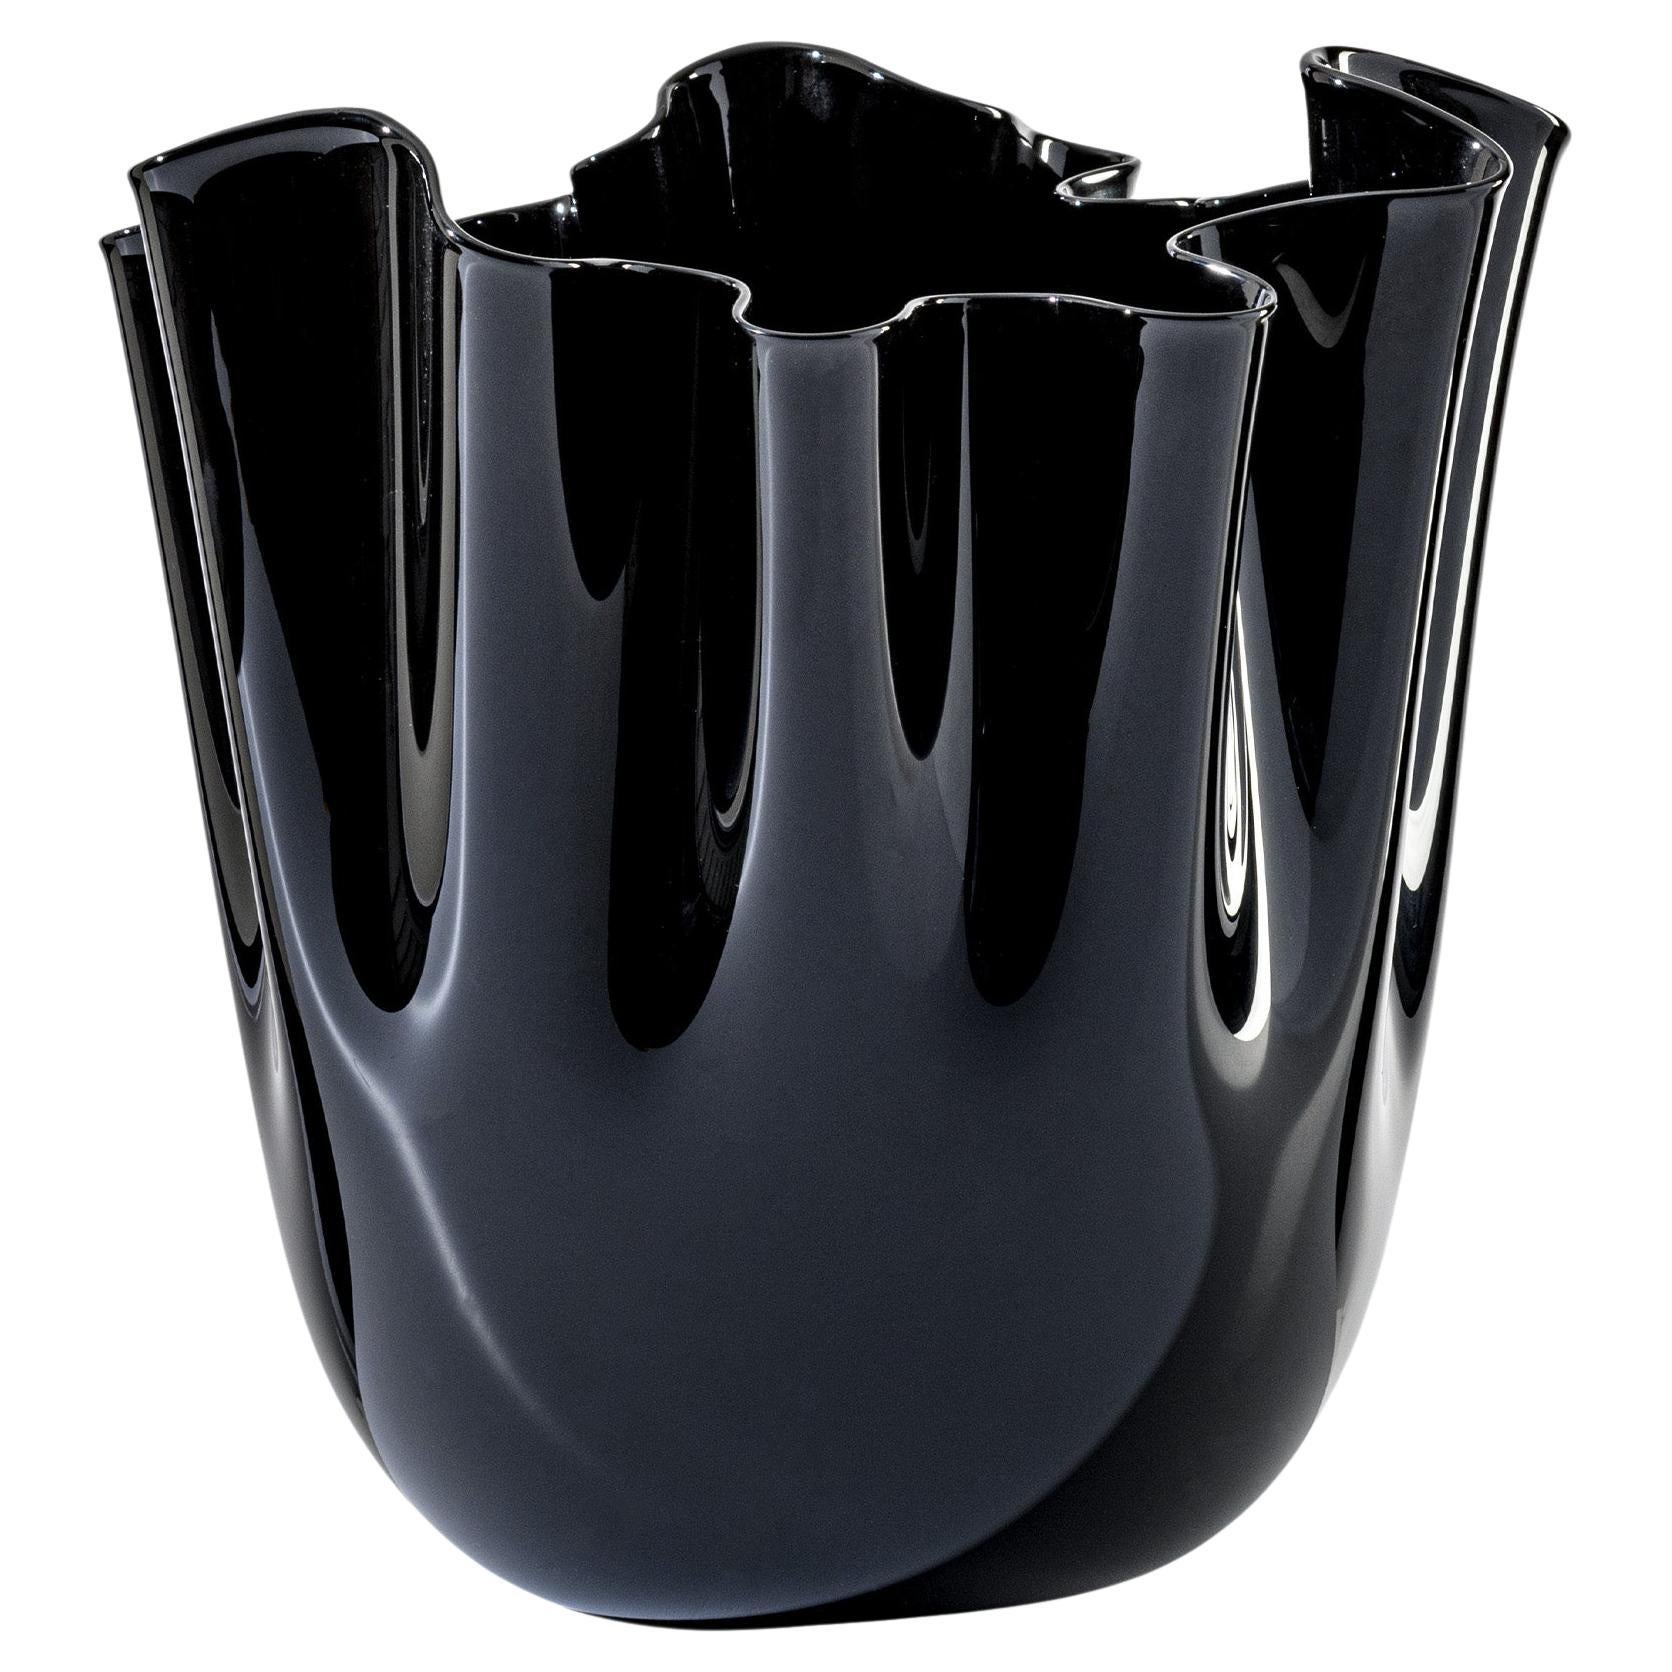 Fazzoletto Opalino Large Glass Vase in Black by Fulvio Bianconi and Venini